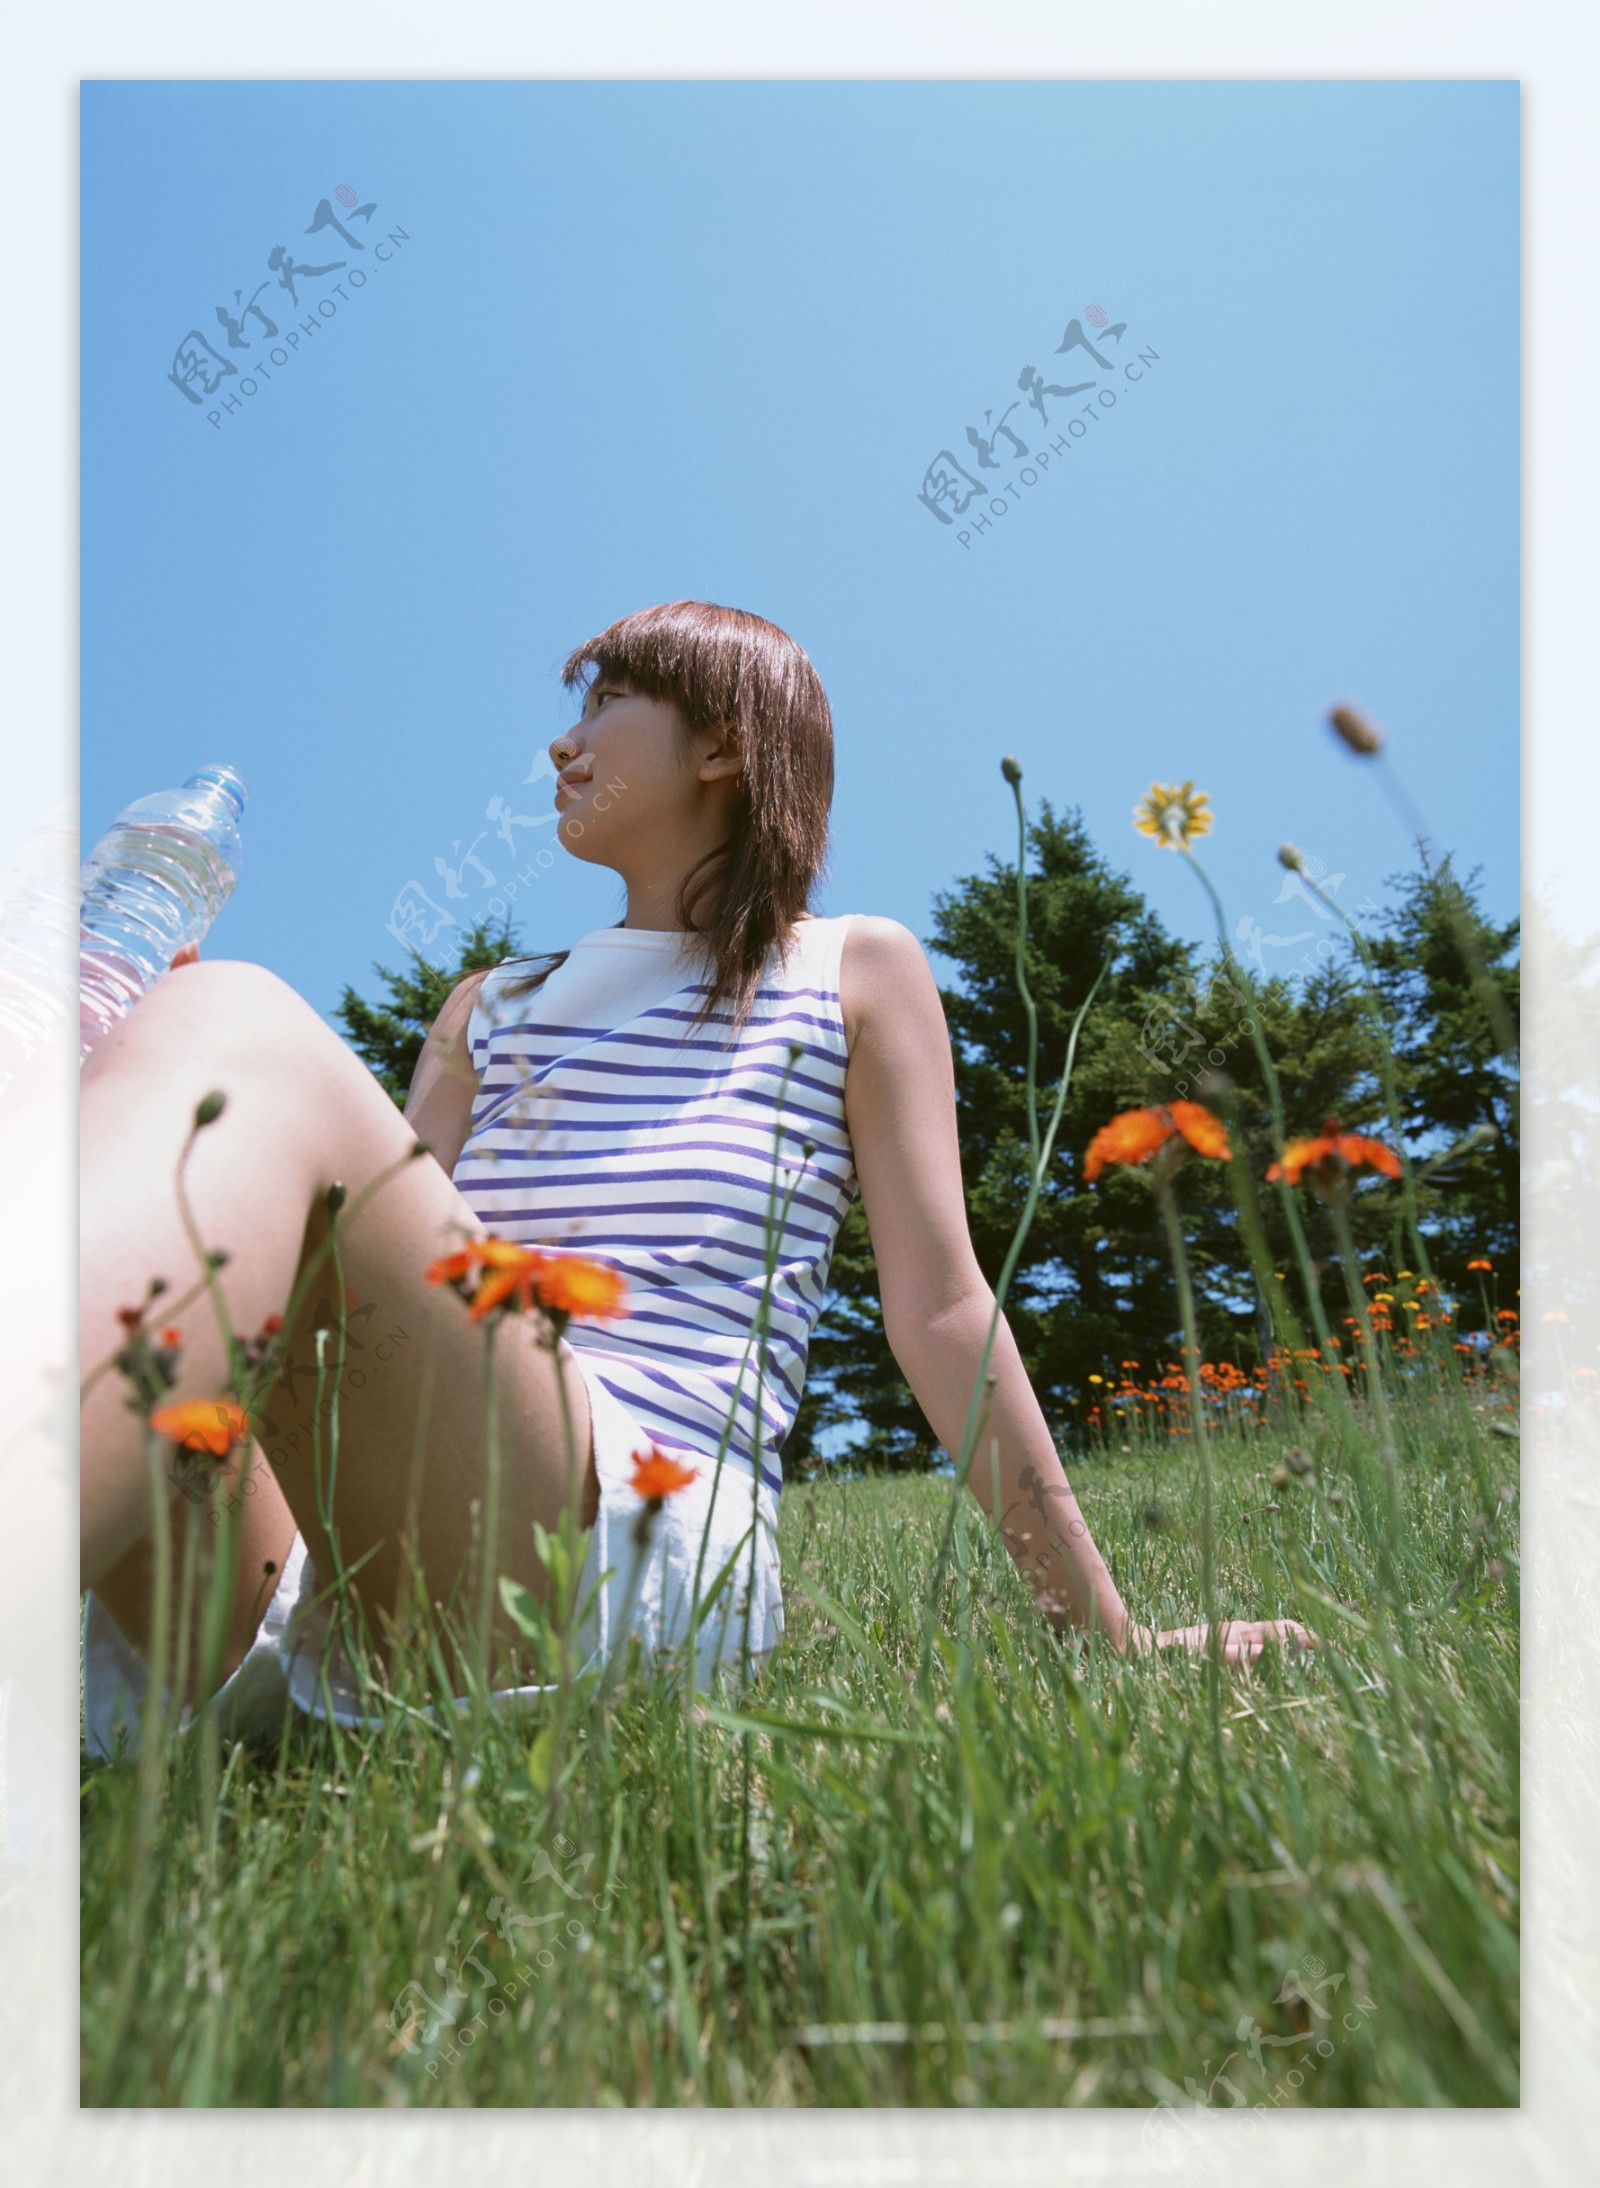 坐在草地上喝水的美女图片